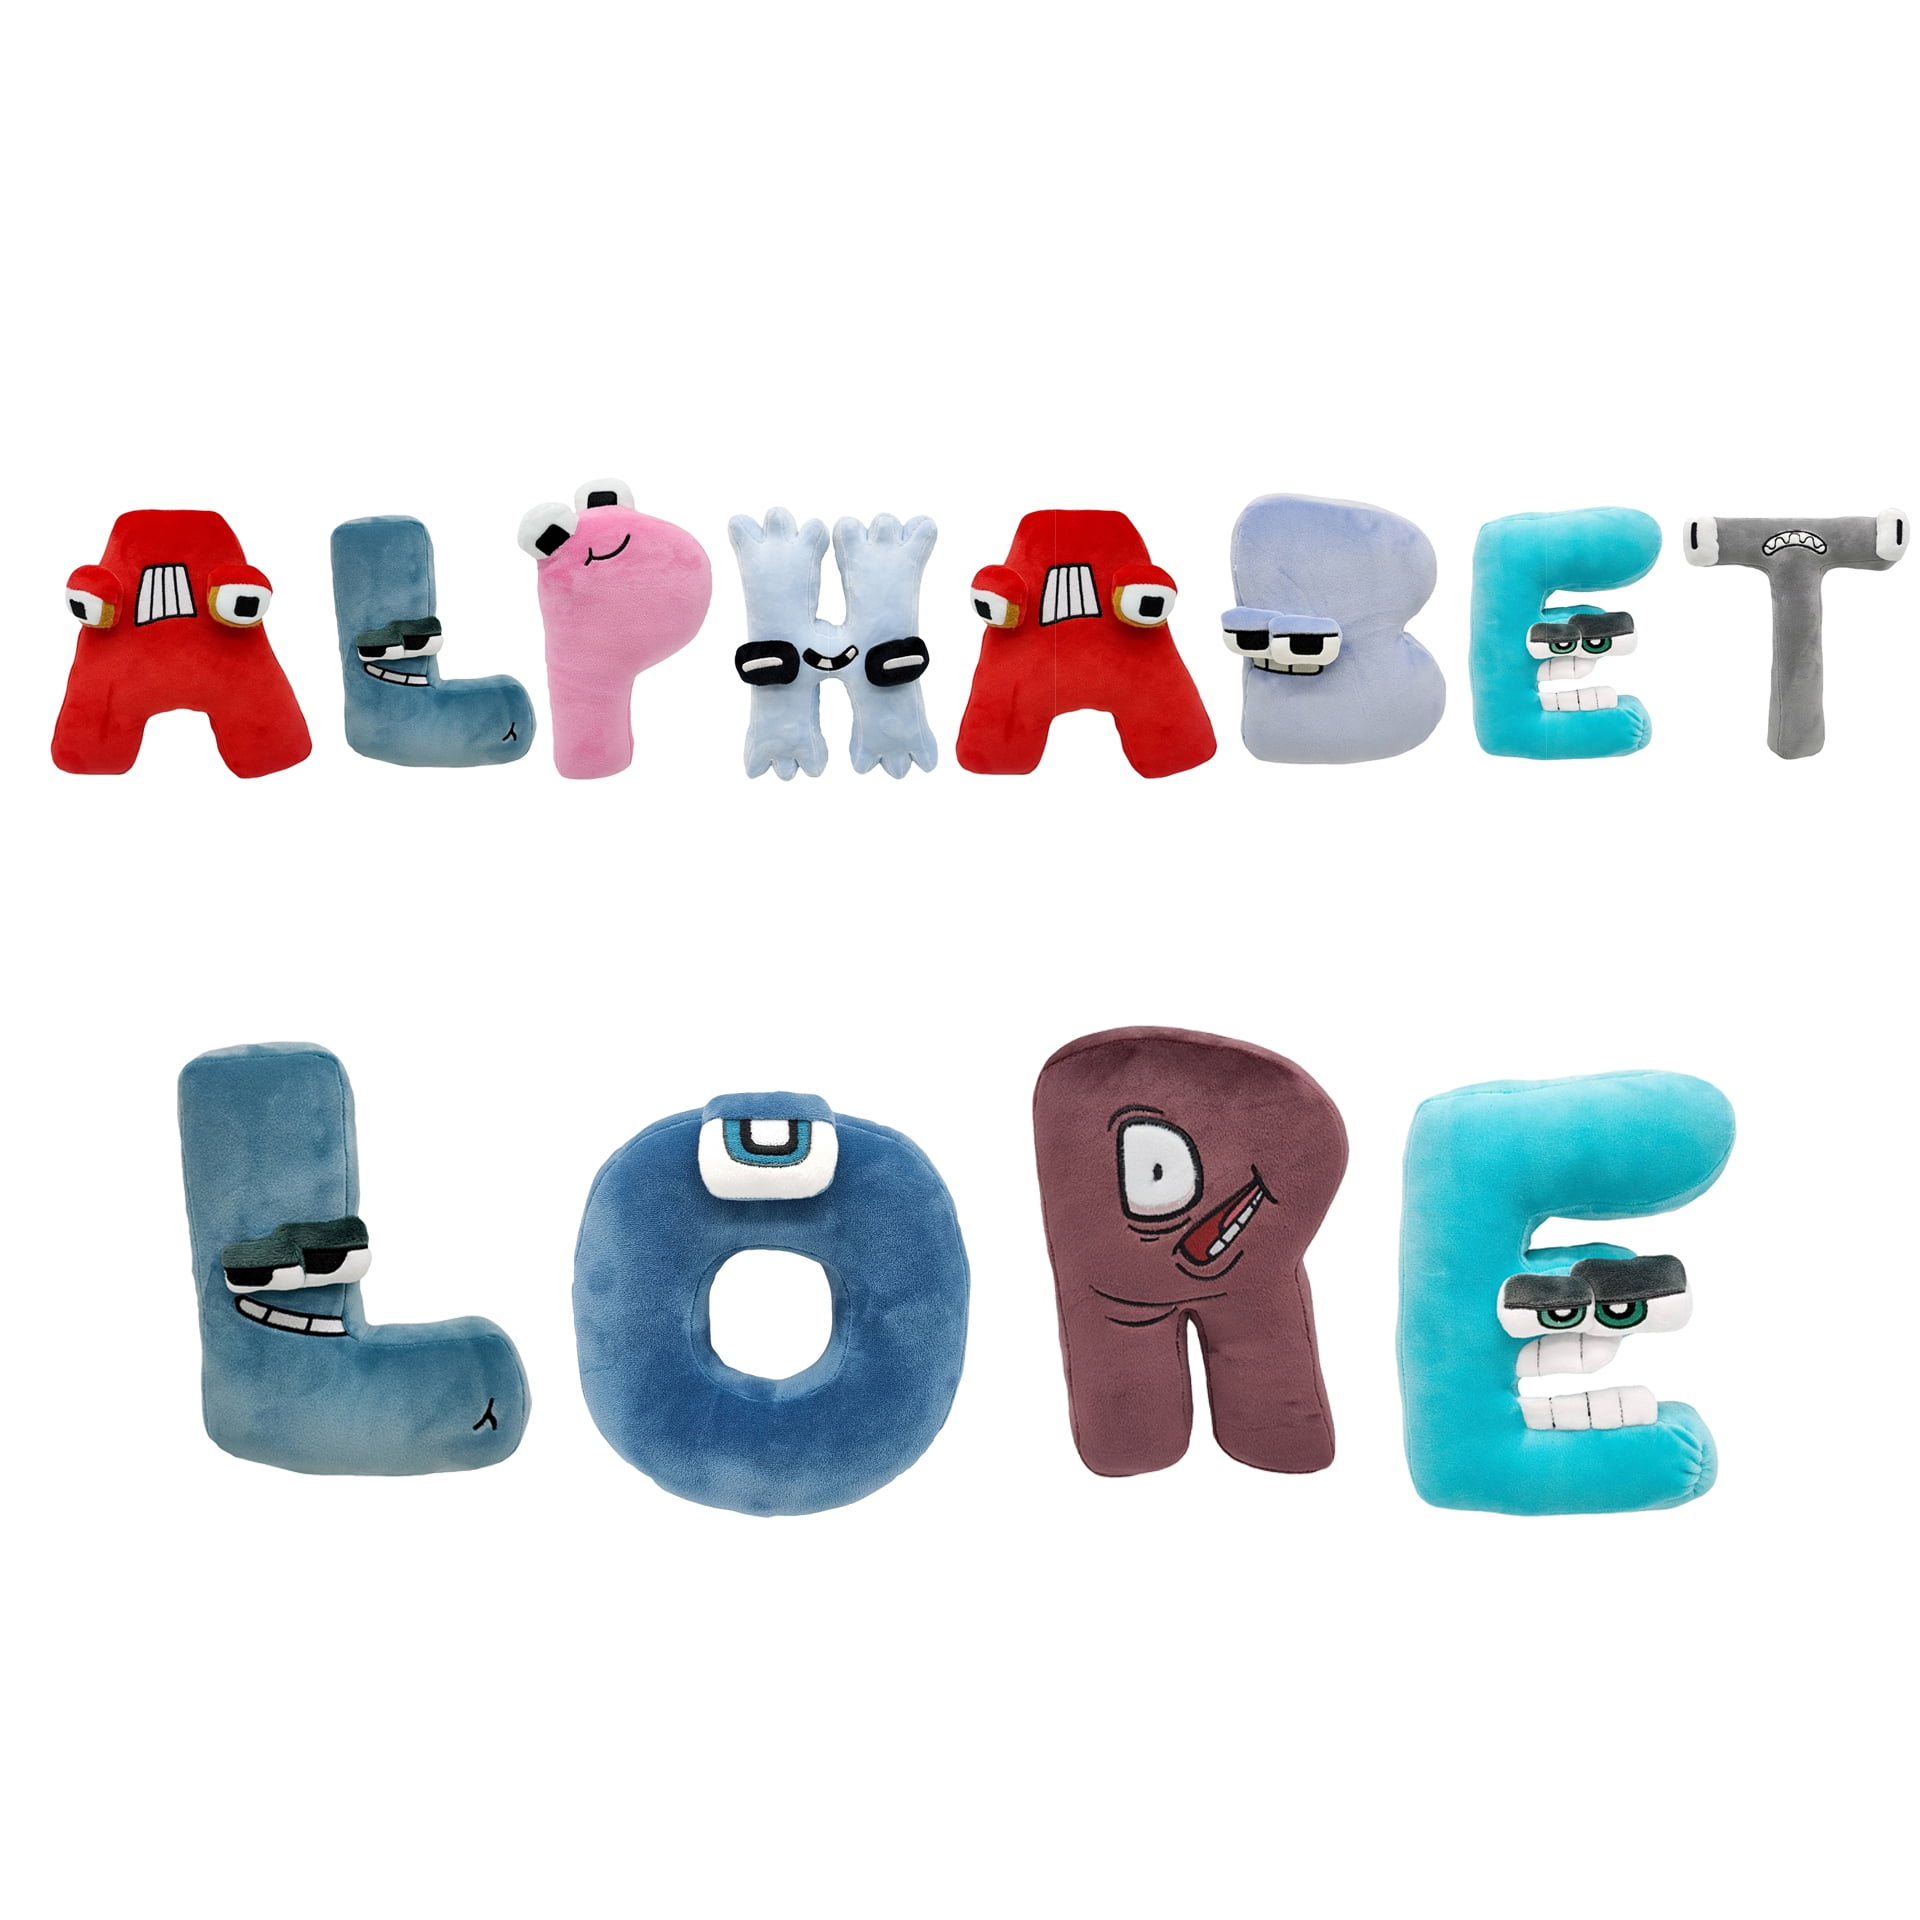 26 Letter Alphabet Lore Plush Toy Alphabet Lore But are Plush Toy,L 